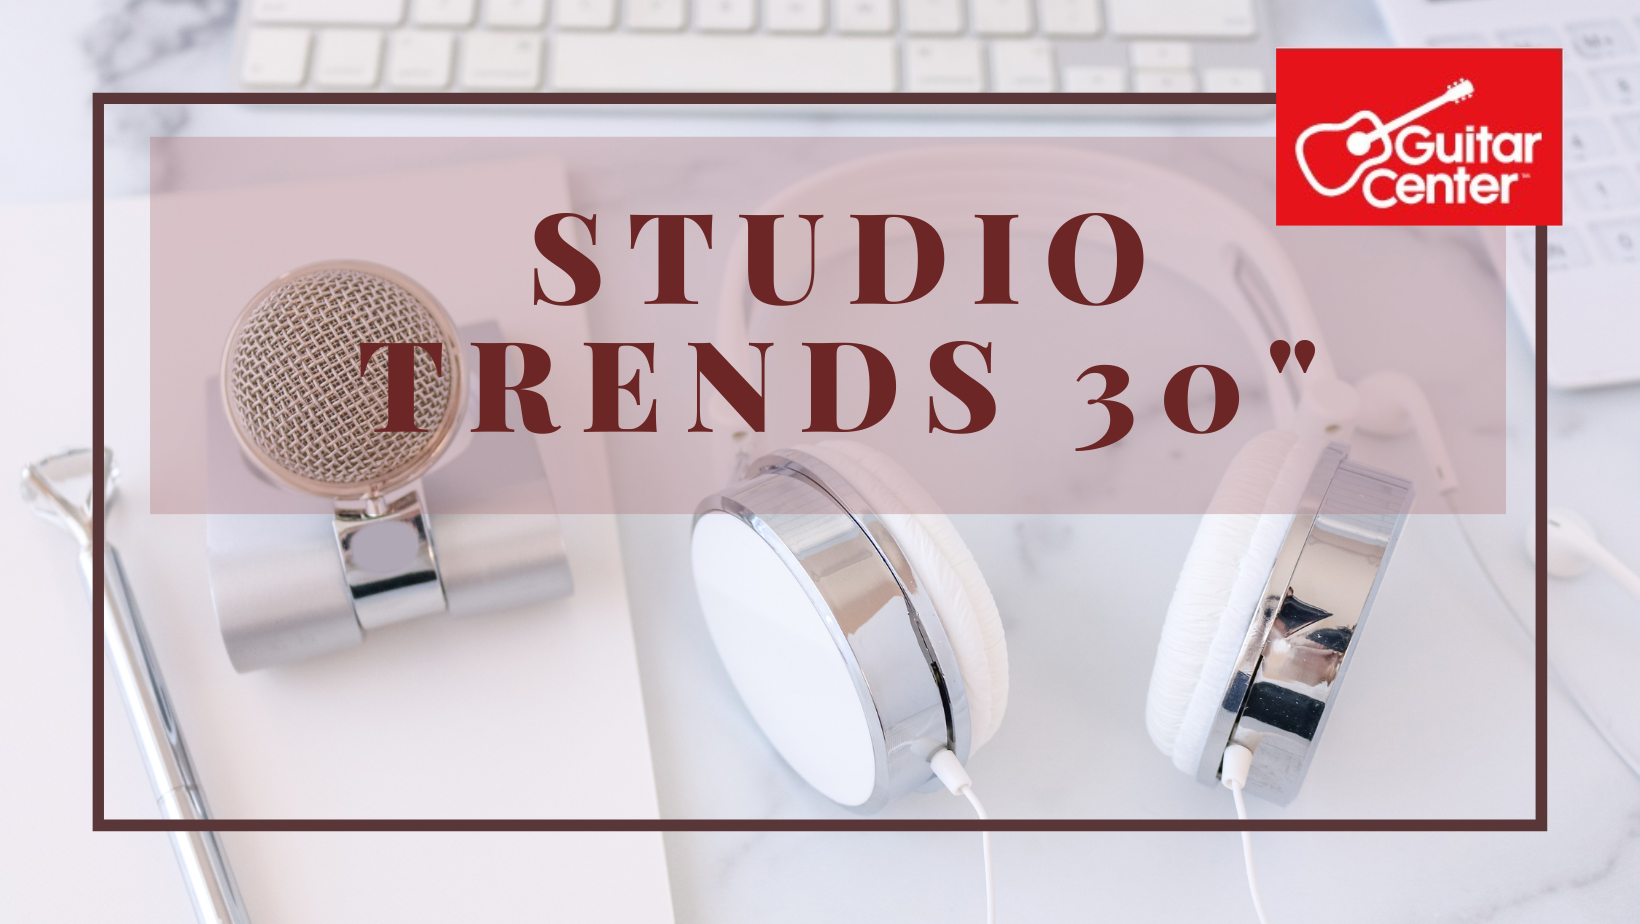 Studio trends 30